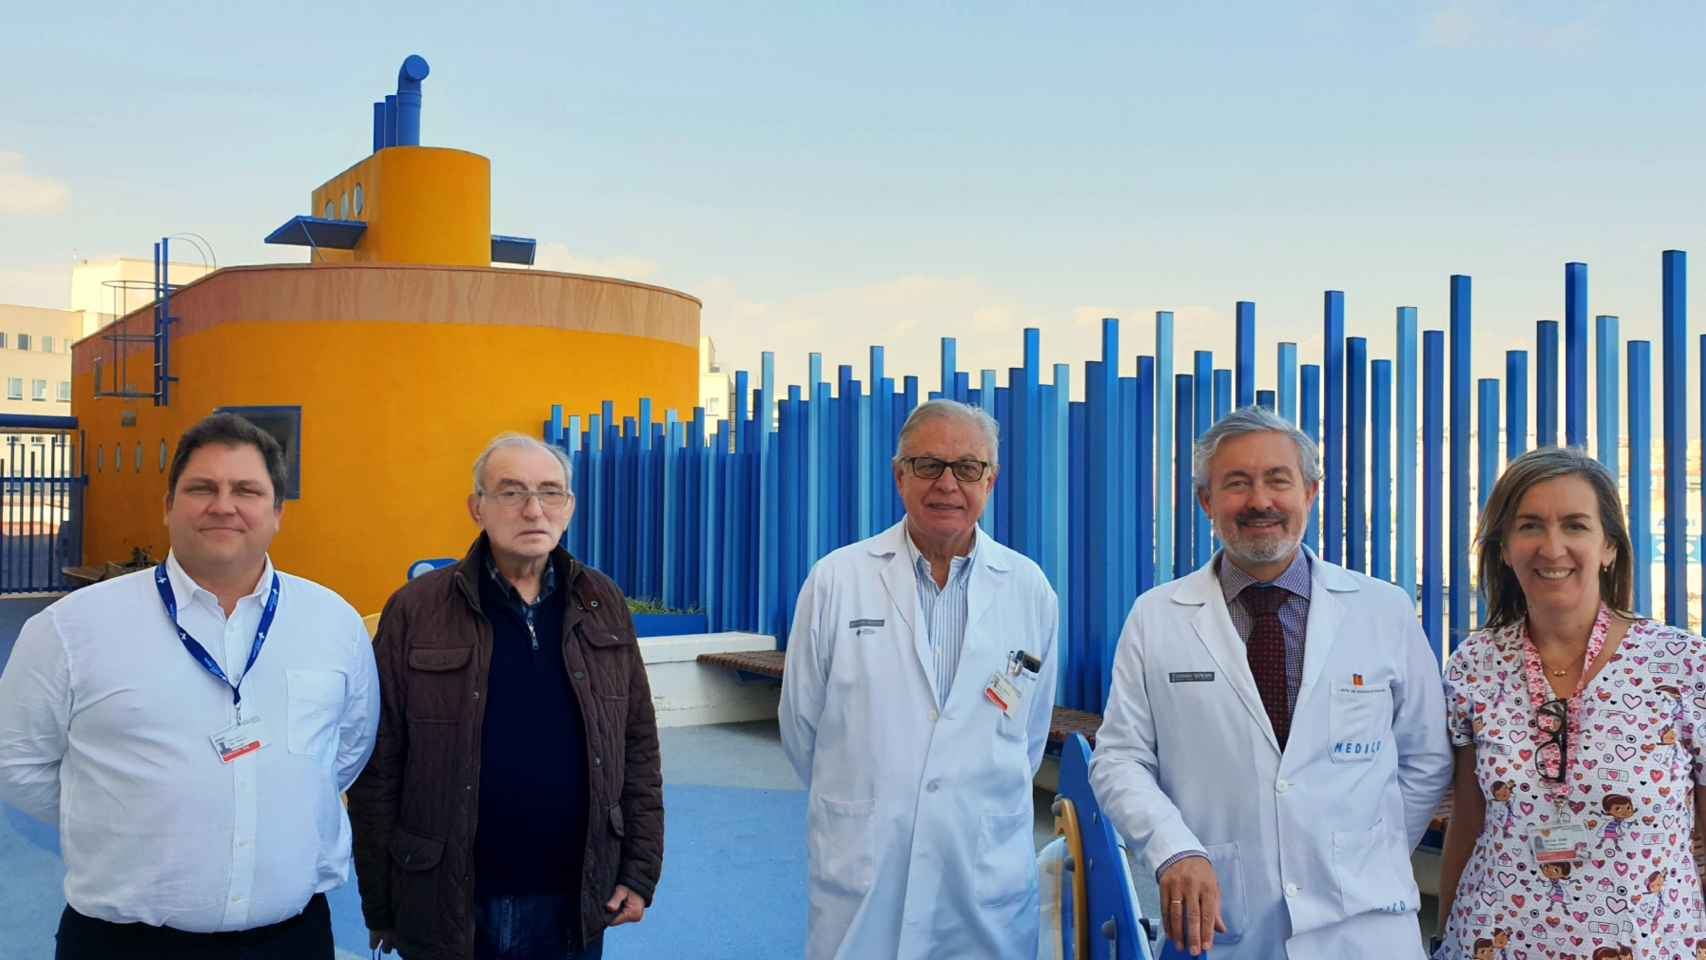 La donación de Juan permitió crear este submarino amarillo en Alicante para que lo aprovecharan los niños.